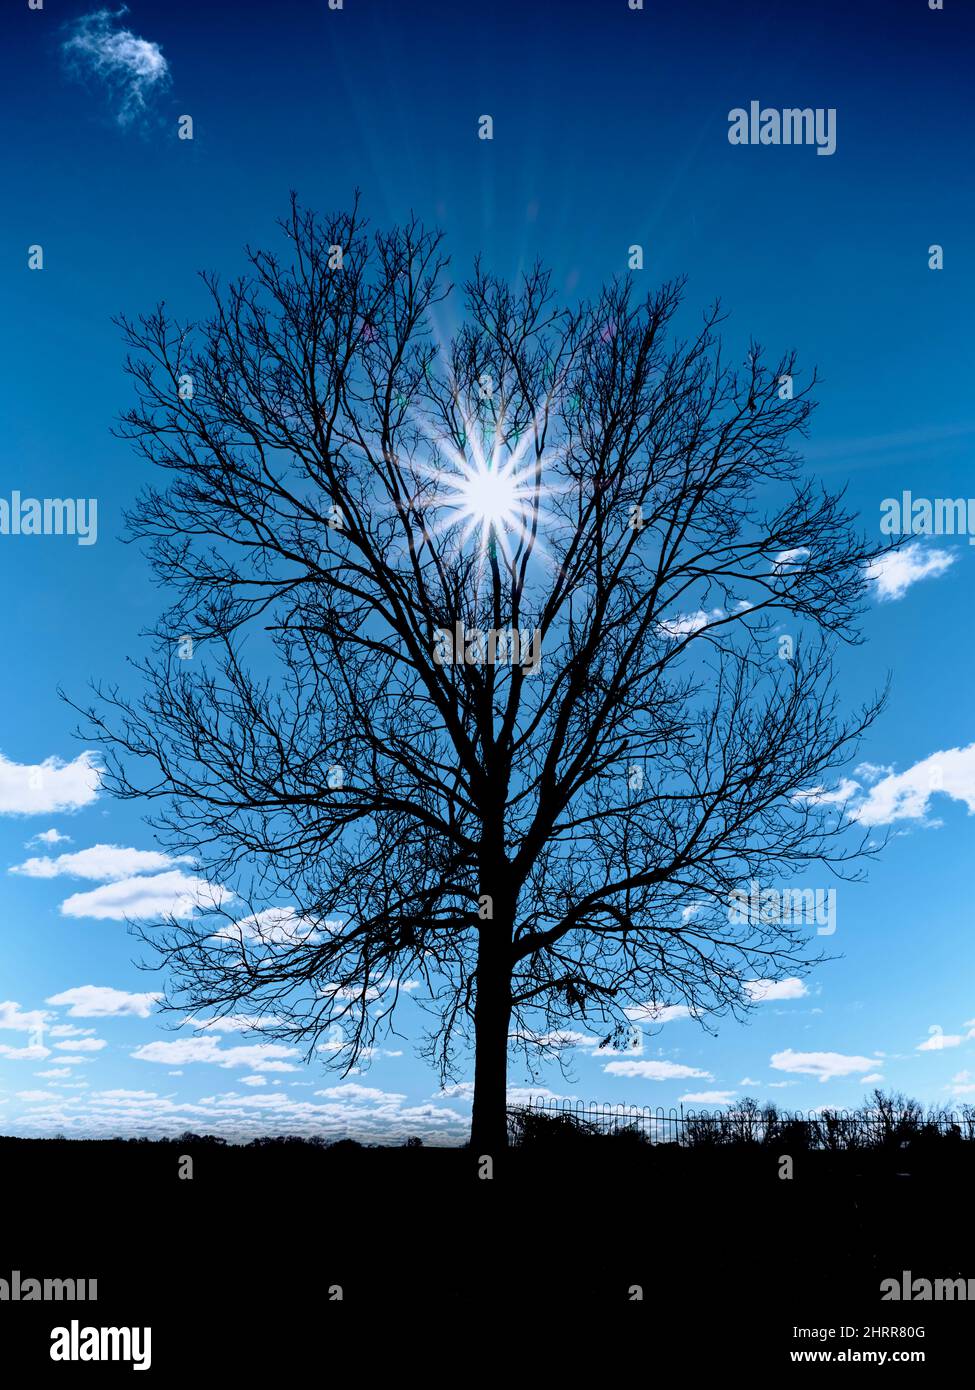 Silhouette d'arbre d'hiver froid avec ciel bleu foncé contre un soleil étoilé. Banque D'Images